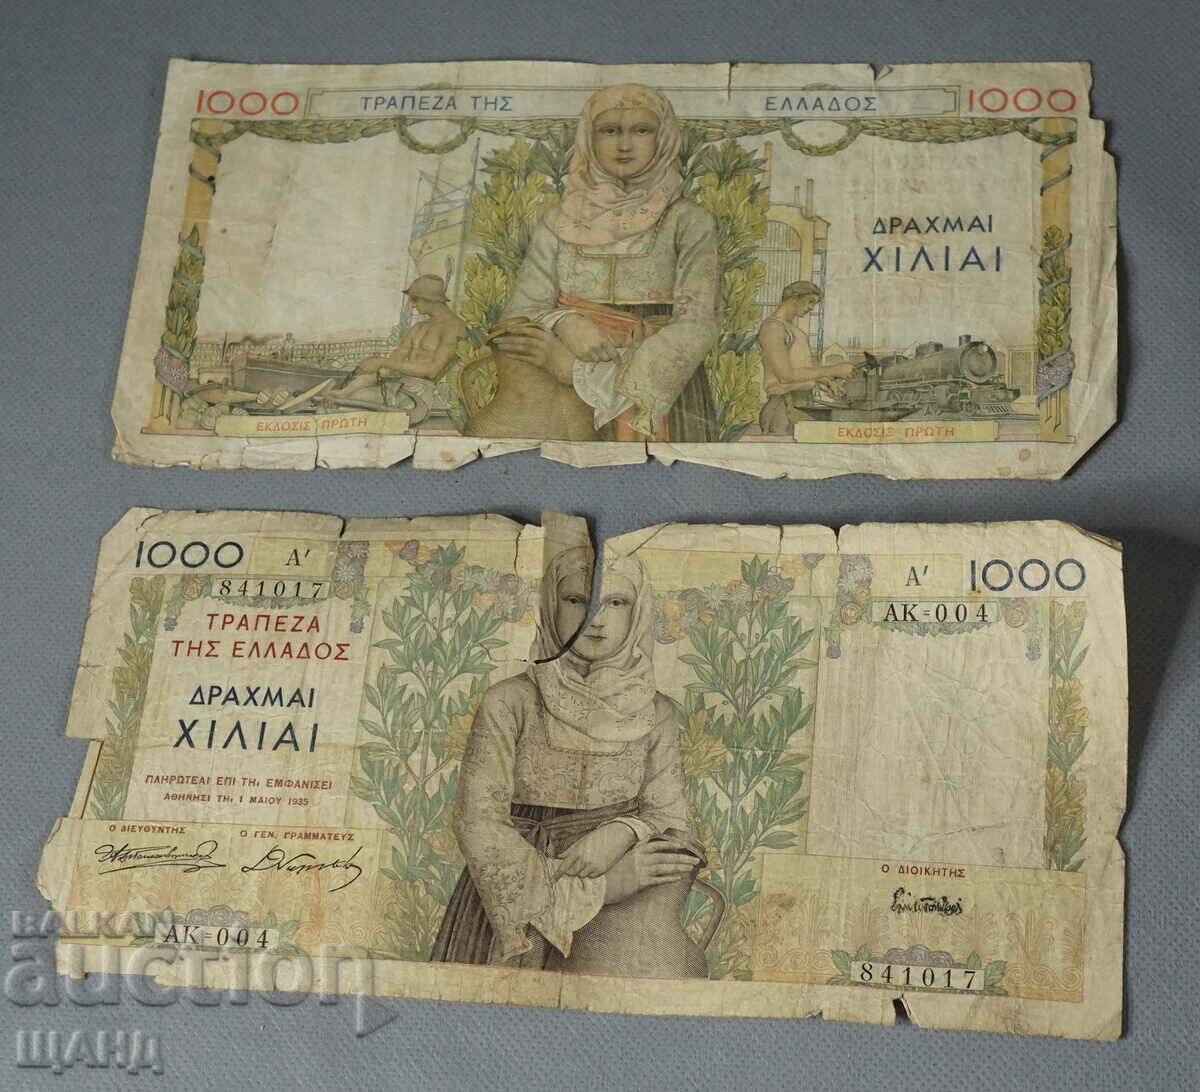 1935 Гърция Гръцка банкнота 1000 драхми лот 2 банкноти